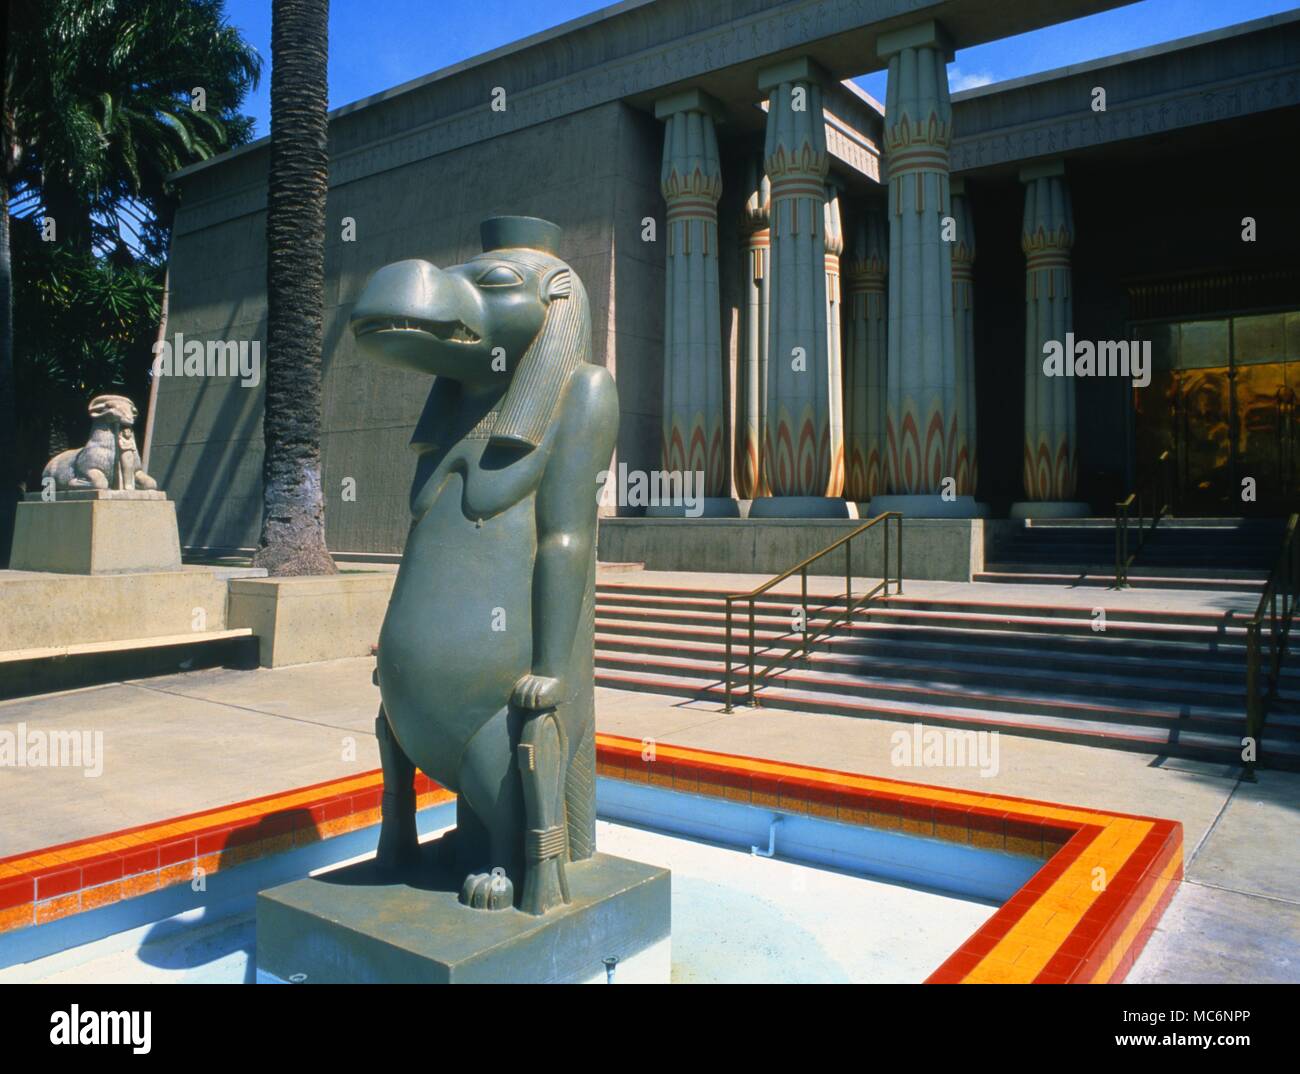 La statue est du dieu égyptien, Tauret. Cet édifice est dans les motifs de la Rosicrucian Park à San Jose, au sud-est de San Francisco. Banque D'Images